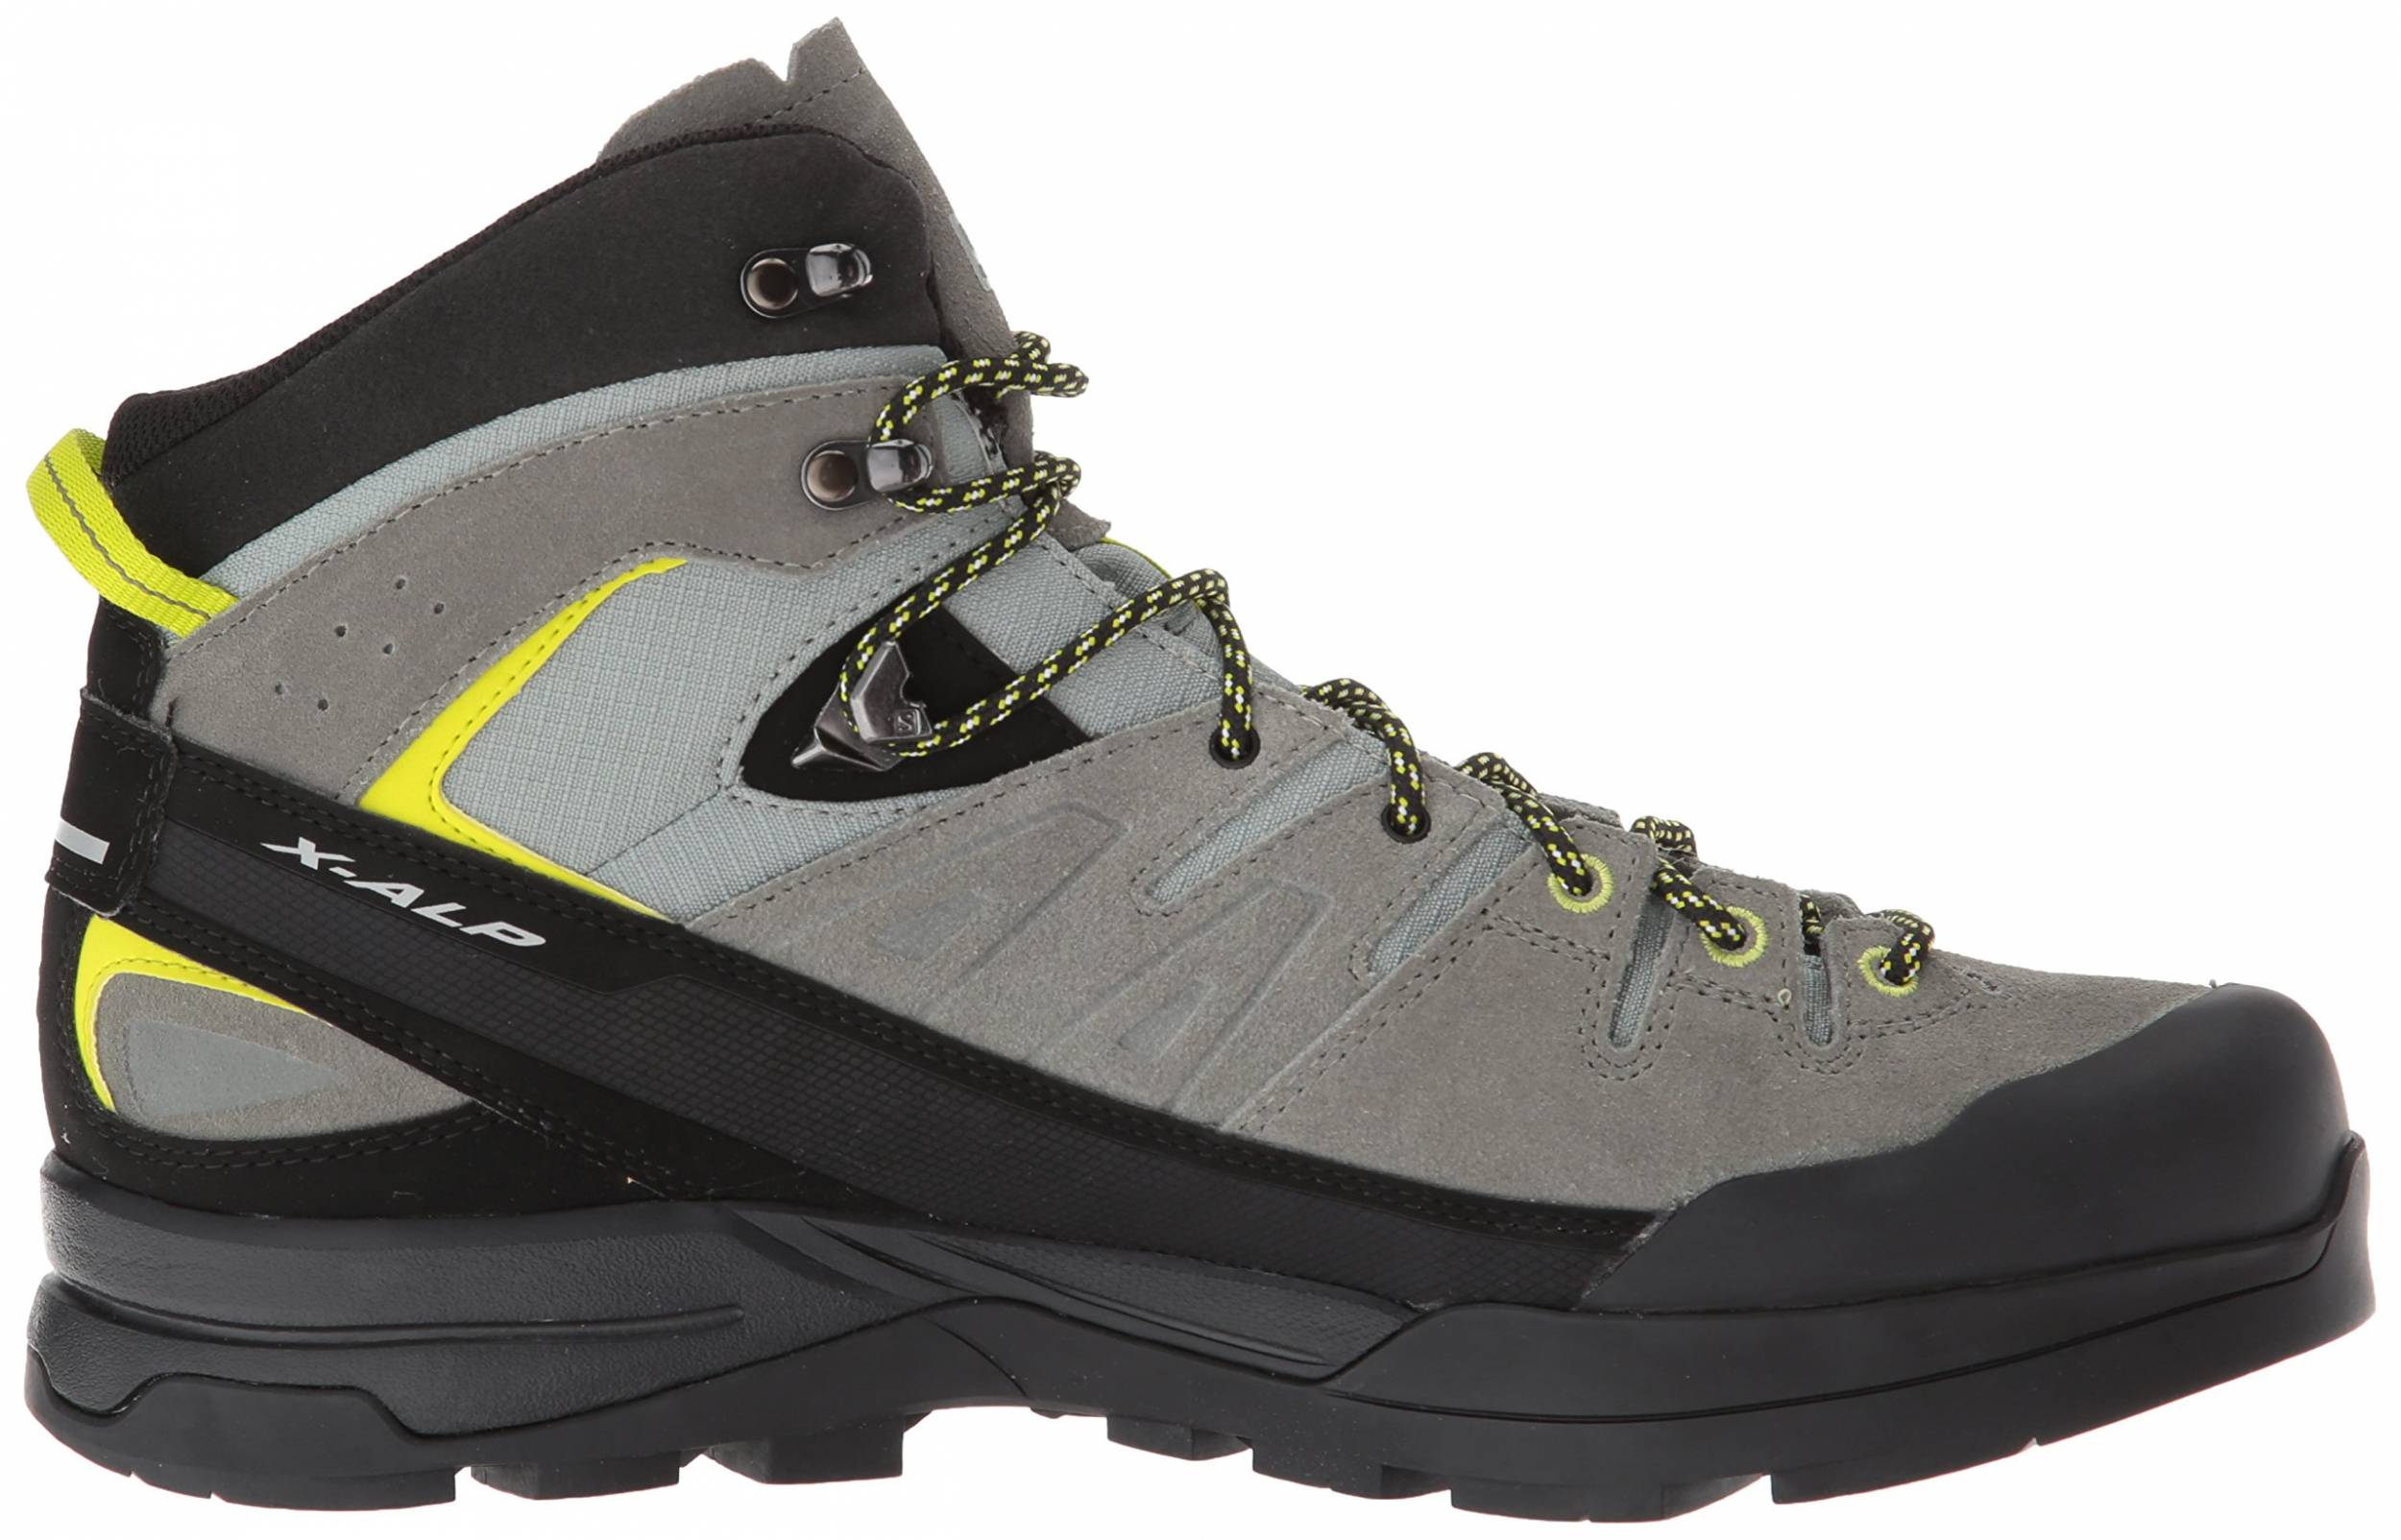 Salomon Mountaineering Boots 